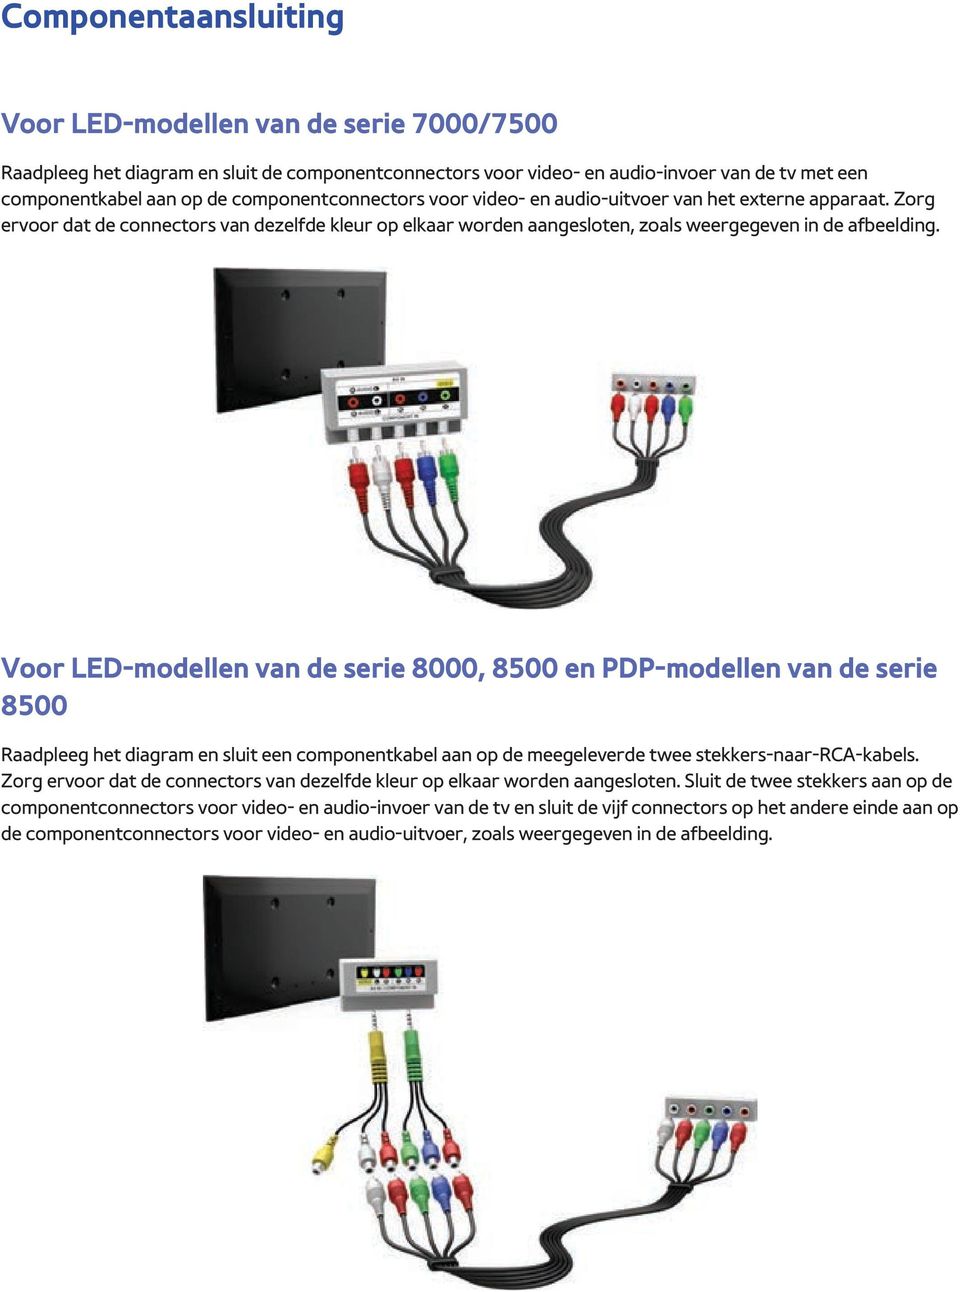 Voor LED-modellen van de serie 8000, 8500 en PDP-modellen van de serie 8500 Raadpleeg het diagram en sluit een componentkabel aan op de meegeleverde twee stekkers-naar-rca-kabels.